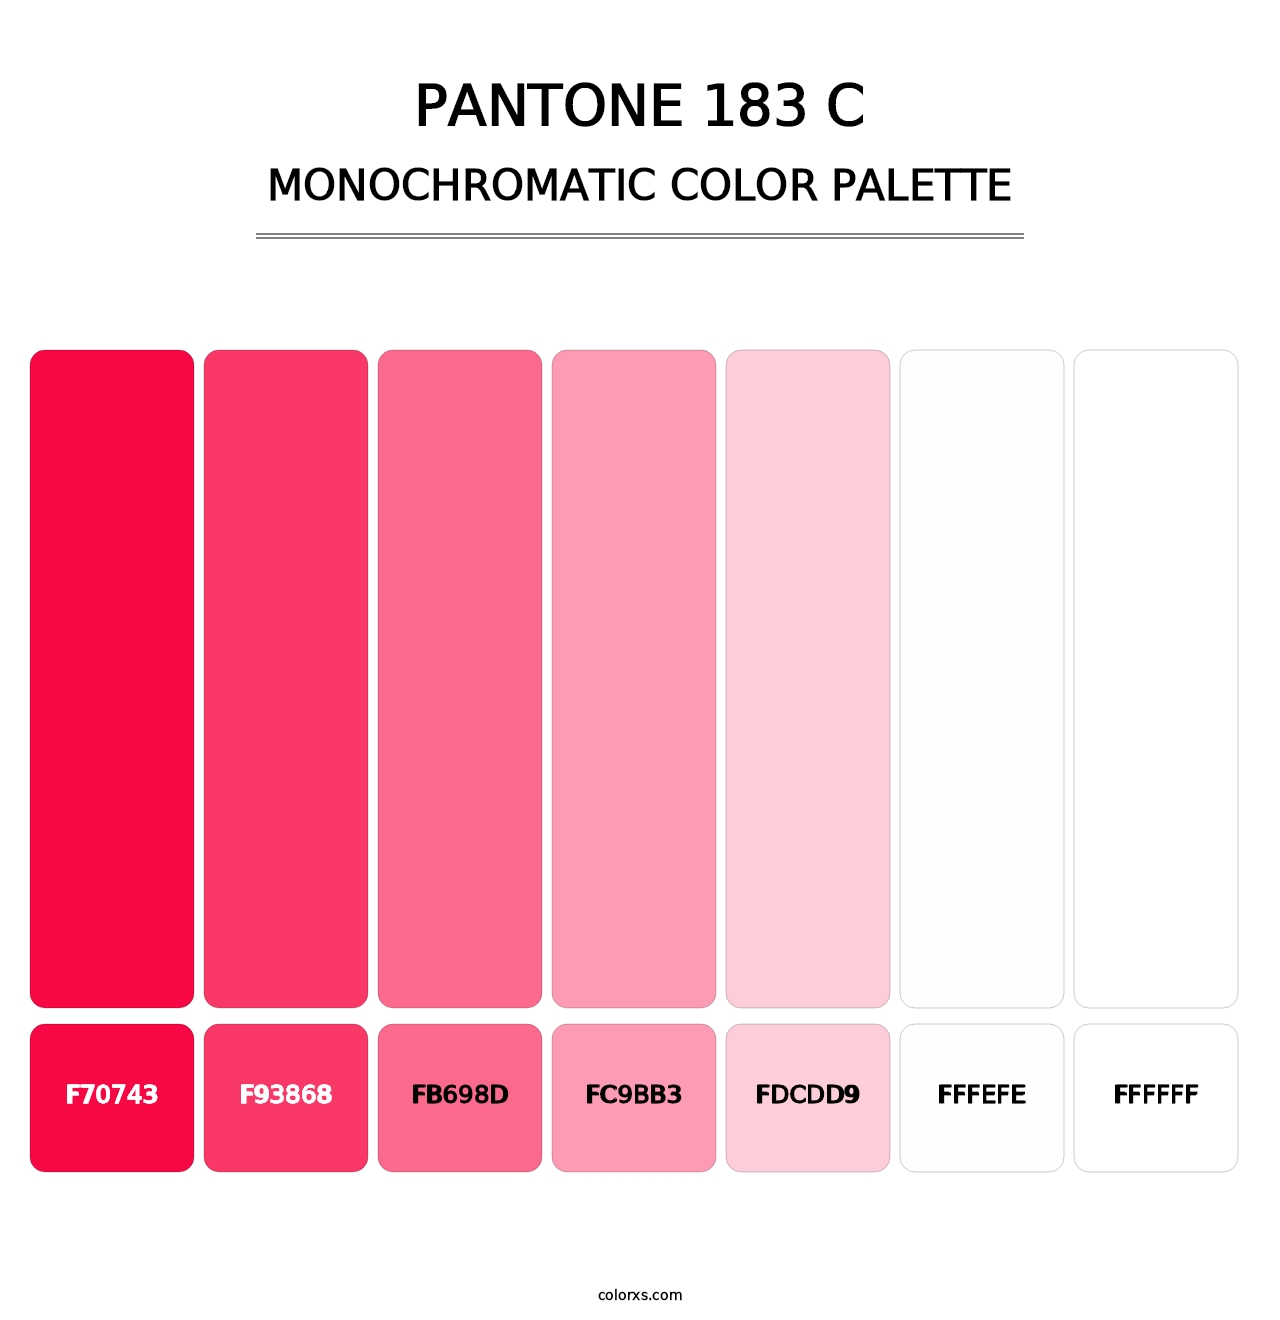 PANTONE 183 C - Monochromatic Color Palette